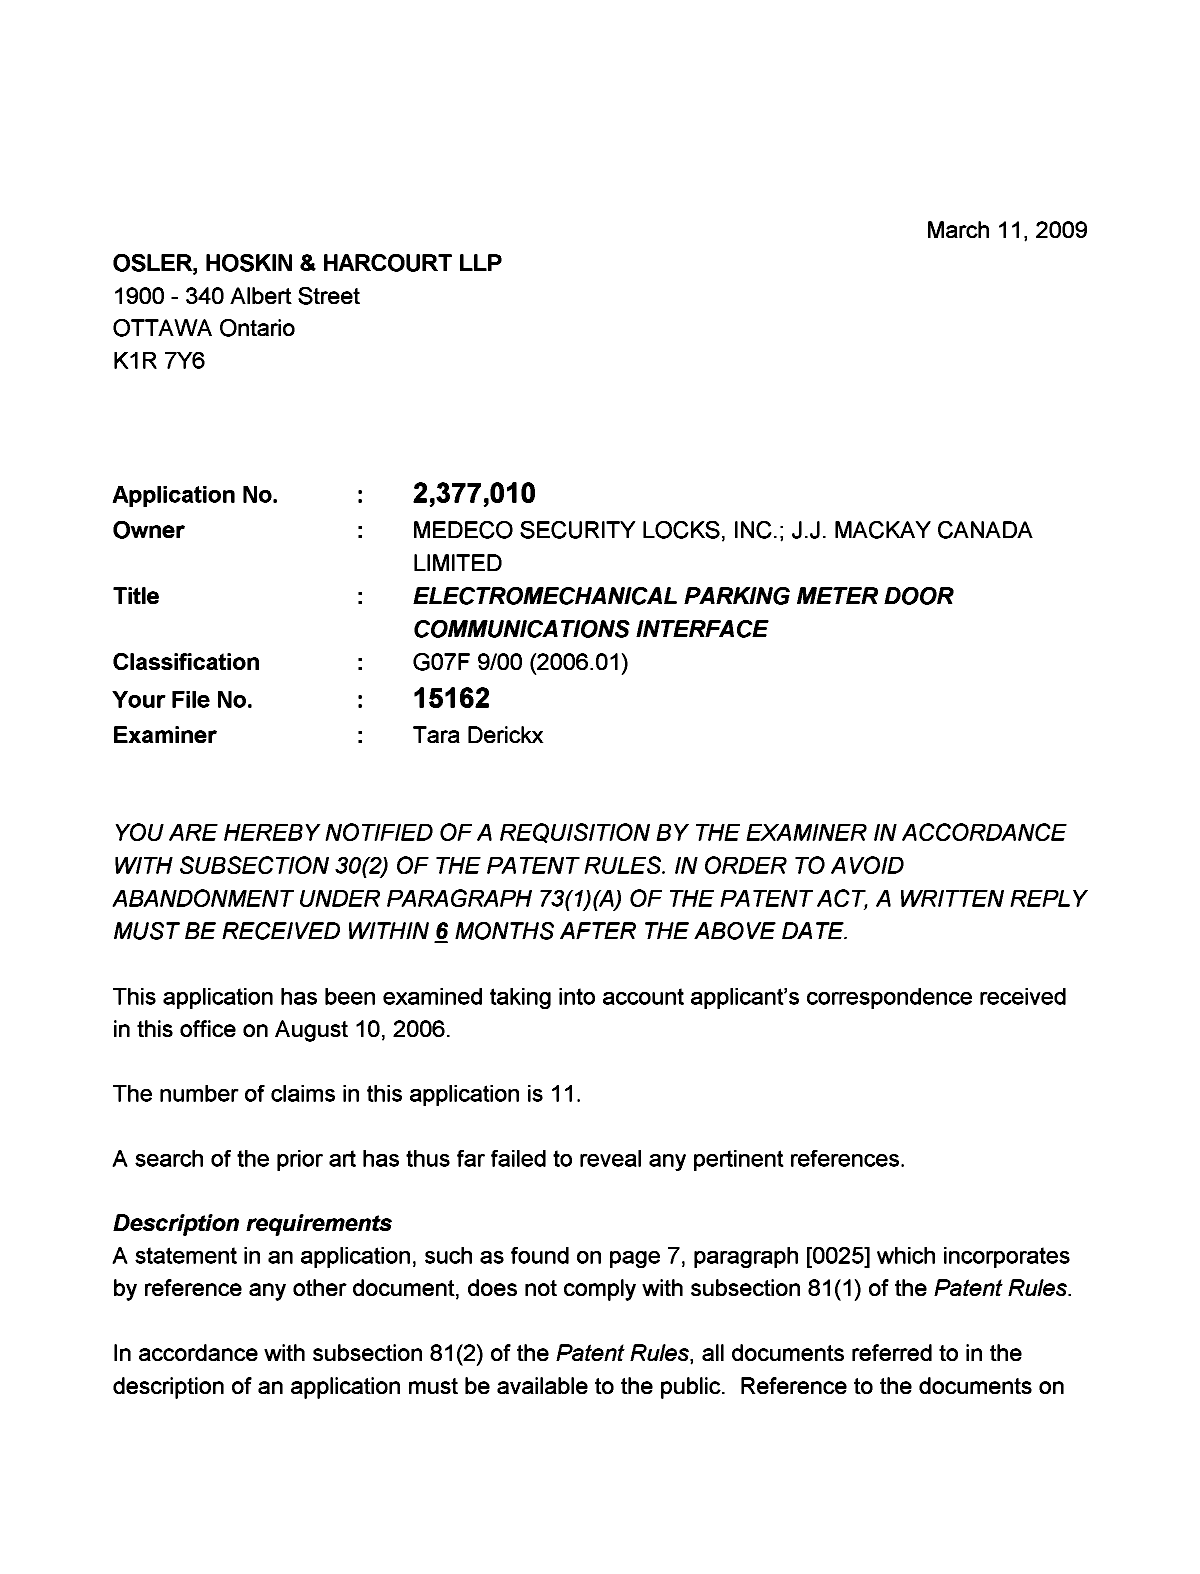 Document de brevet canadien 2377010. Poursuite-Amendment 20090311. Image 1 de 2